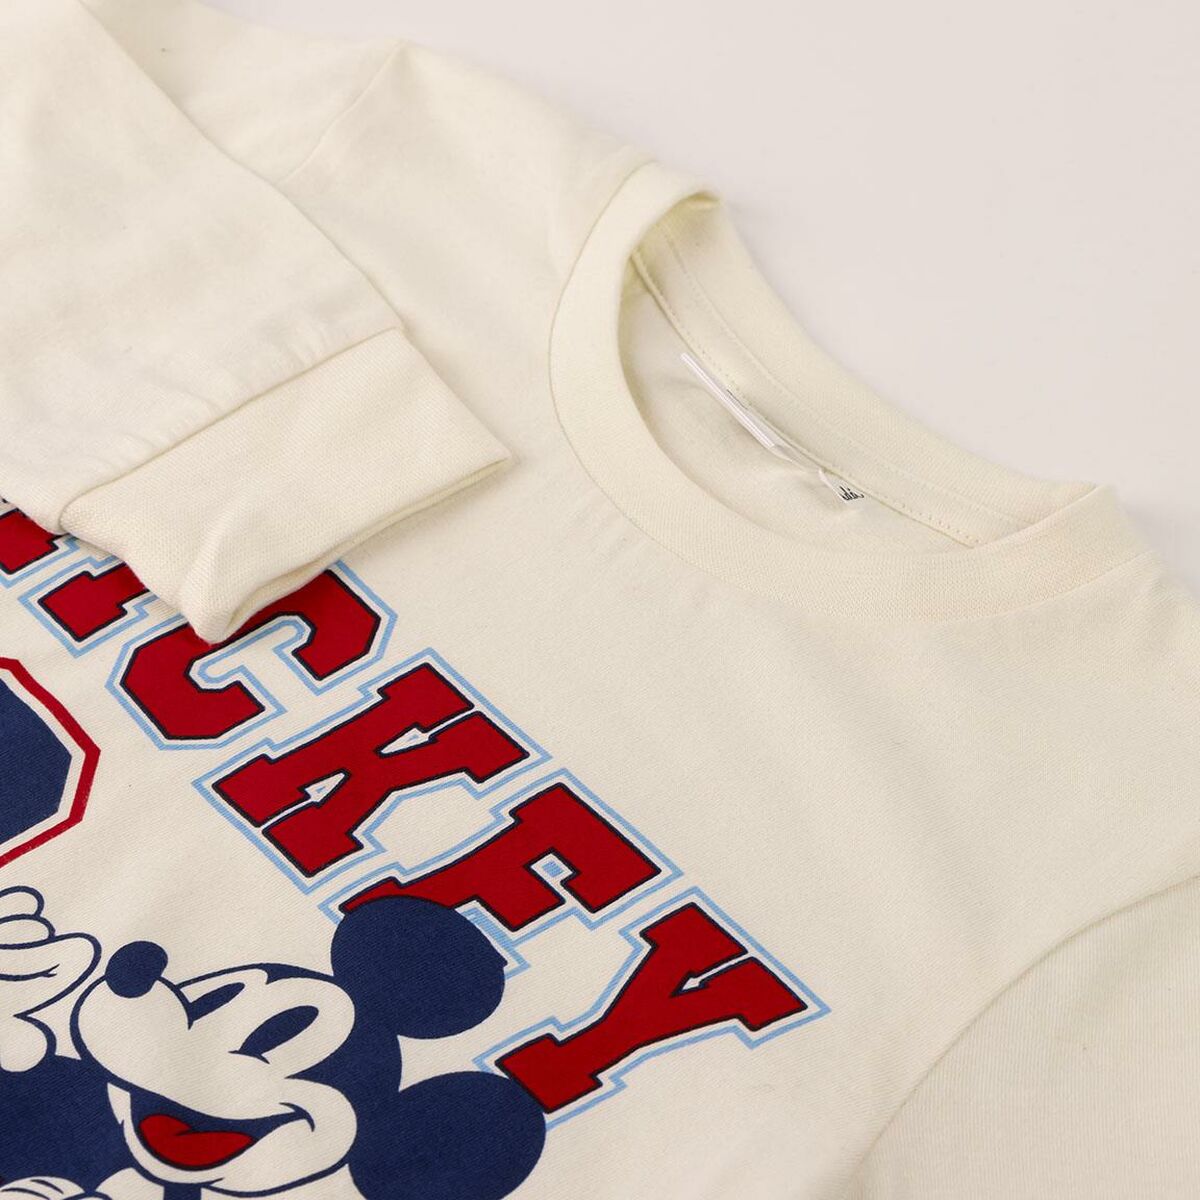 Schlafanzug Für Kinder Mickey Mouse Beige